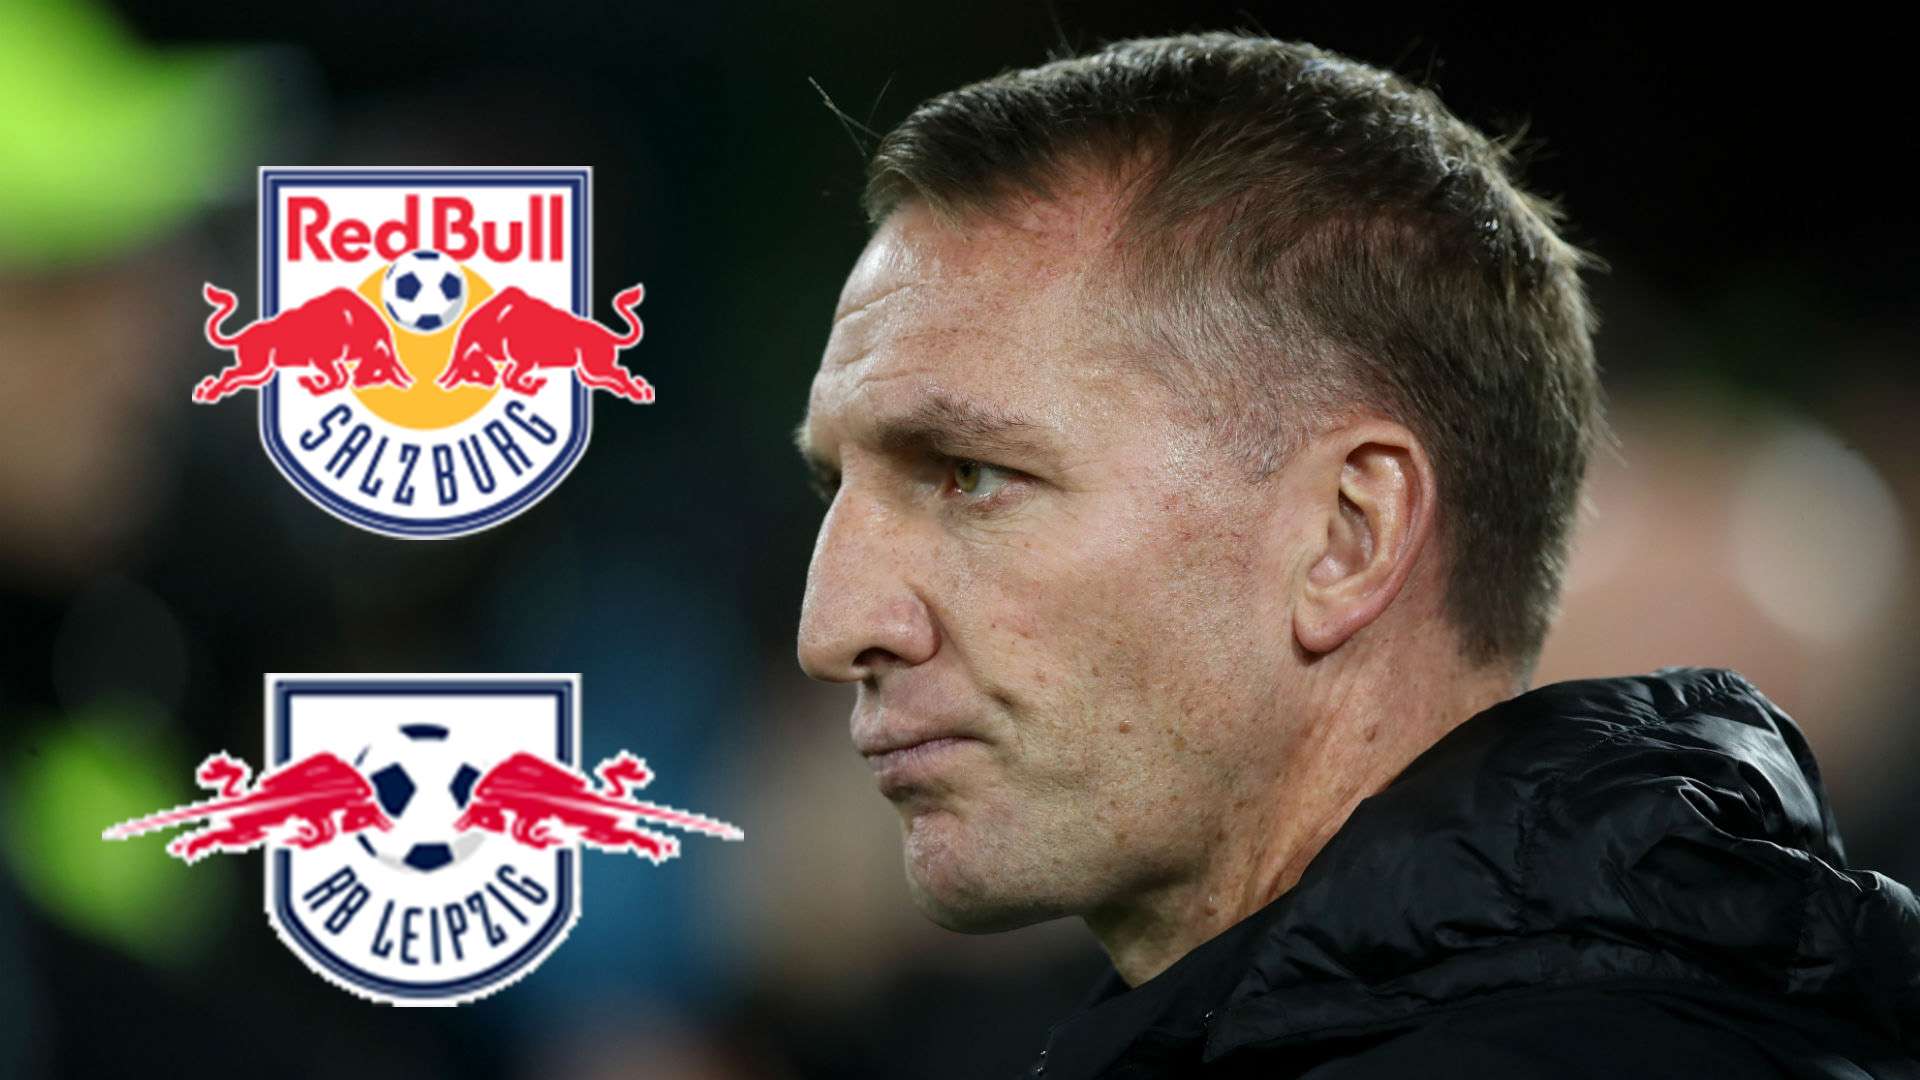 Brendan Rodgers Celtic Red Bull Salzburg RB Leipzig